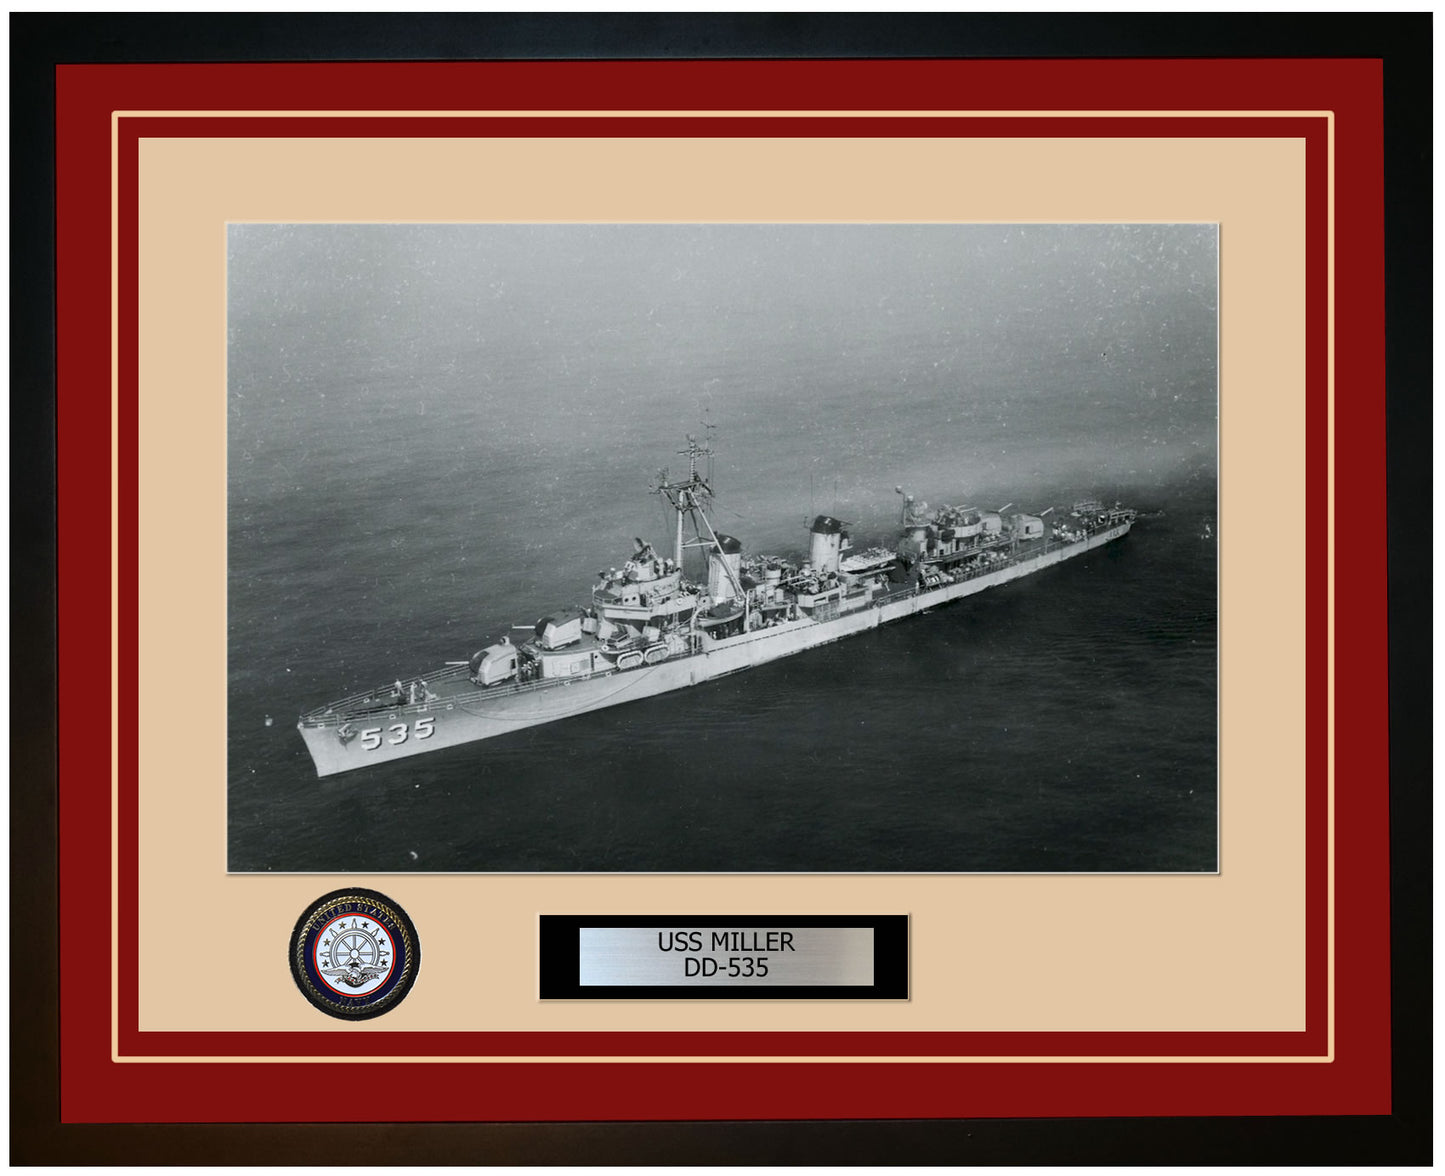 USS MILLER DD-535 Framed Navy Ship Photo Burgundy